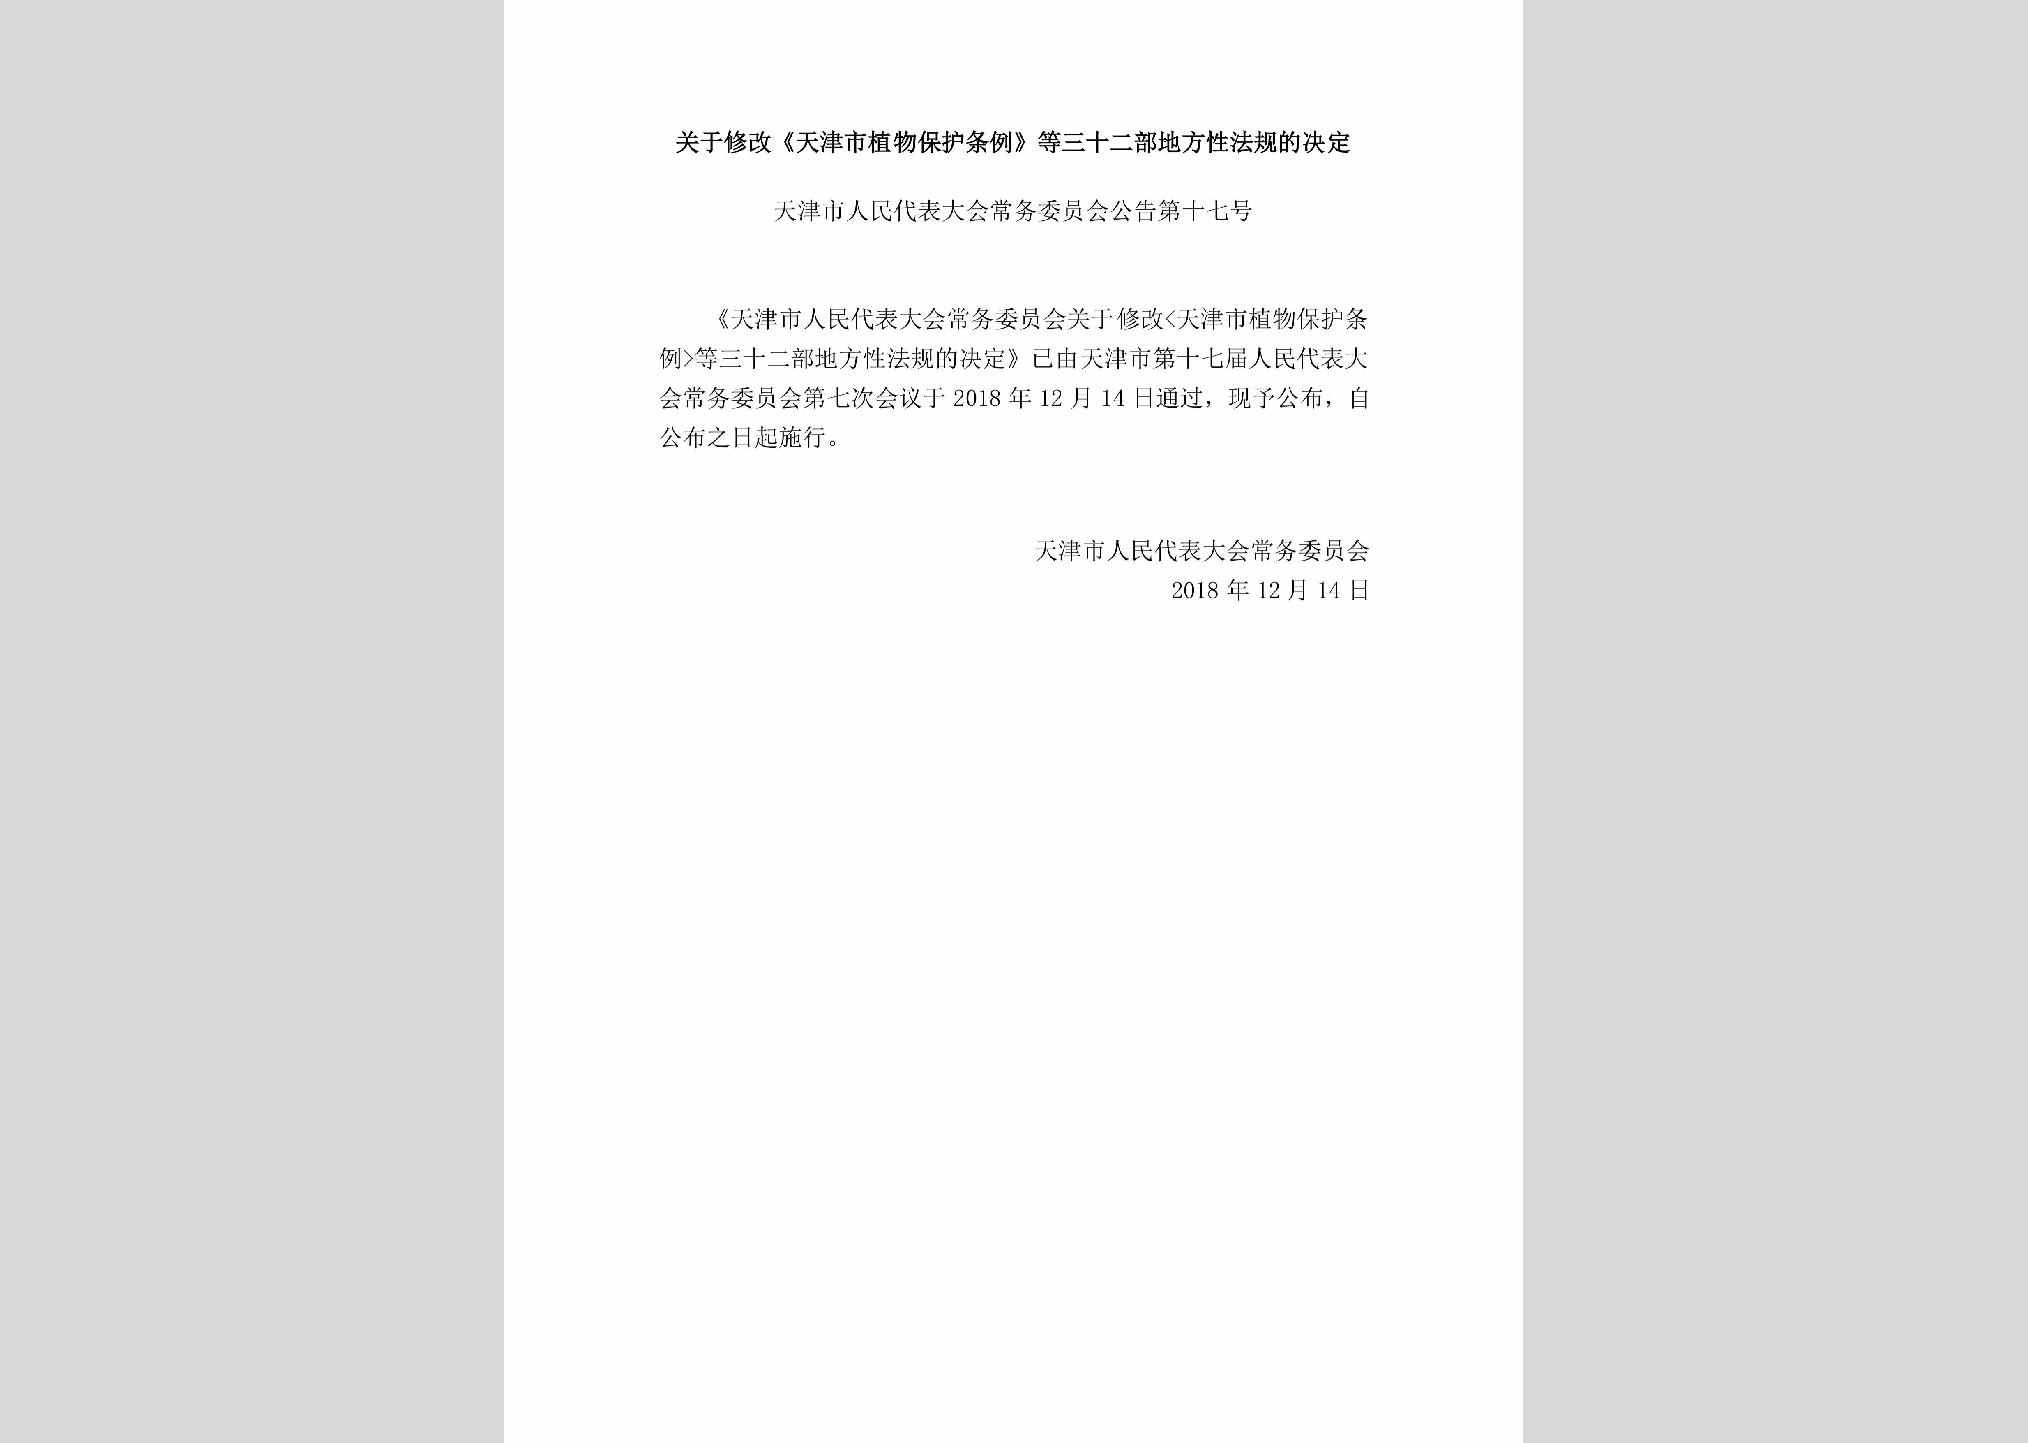 天津市人民代表大会常务委员会公告第十七号：关于修改《天津市植物保护条例》等三十二部地方性法规的决定